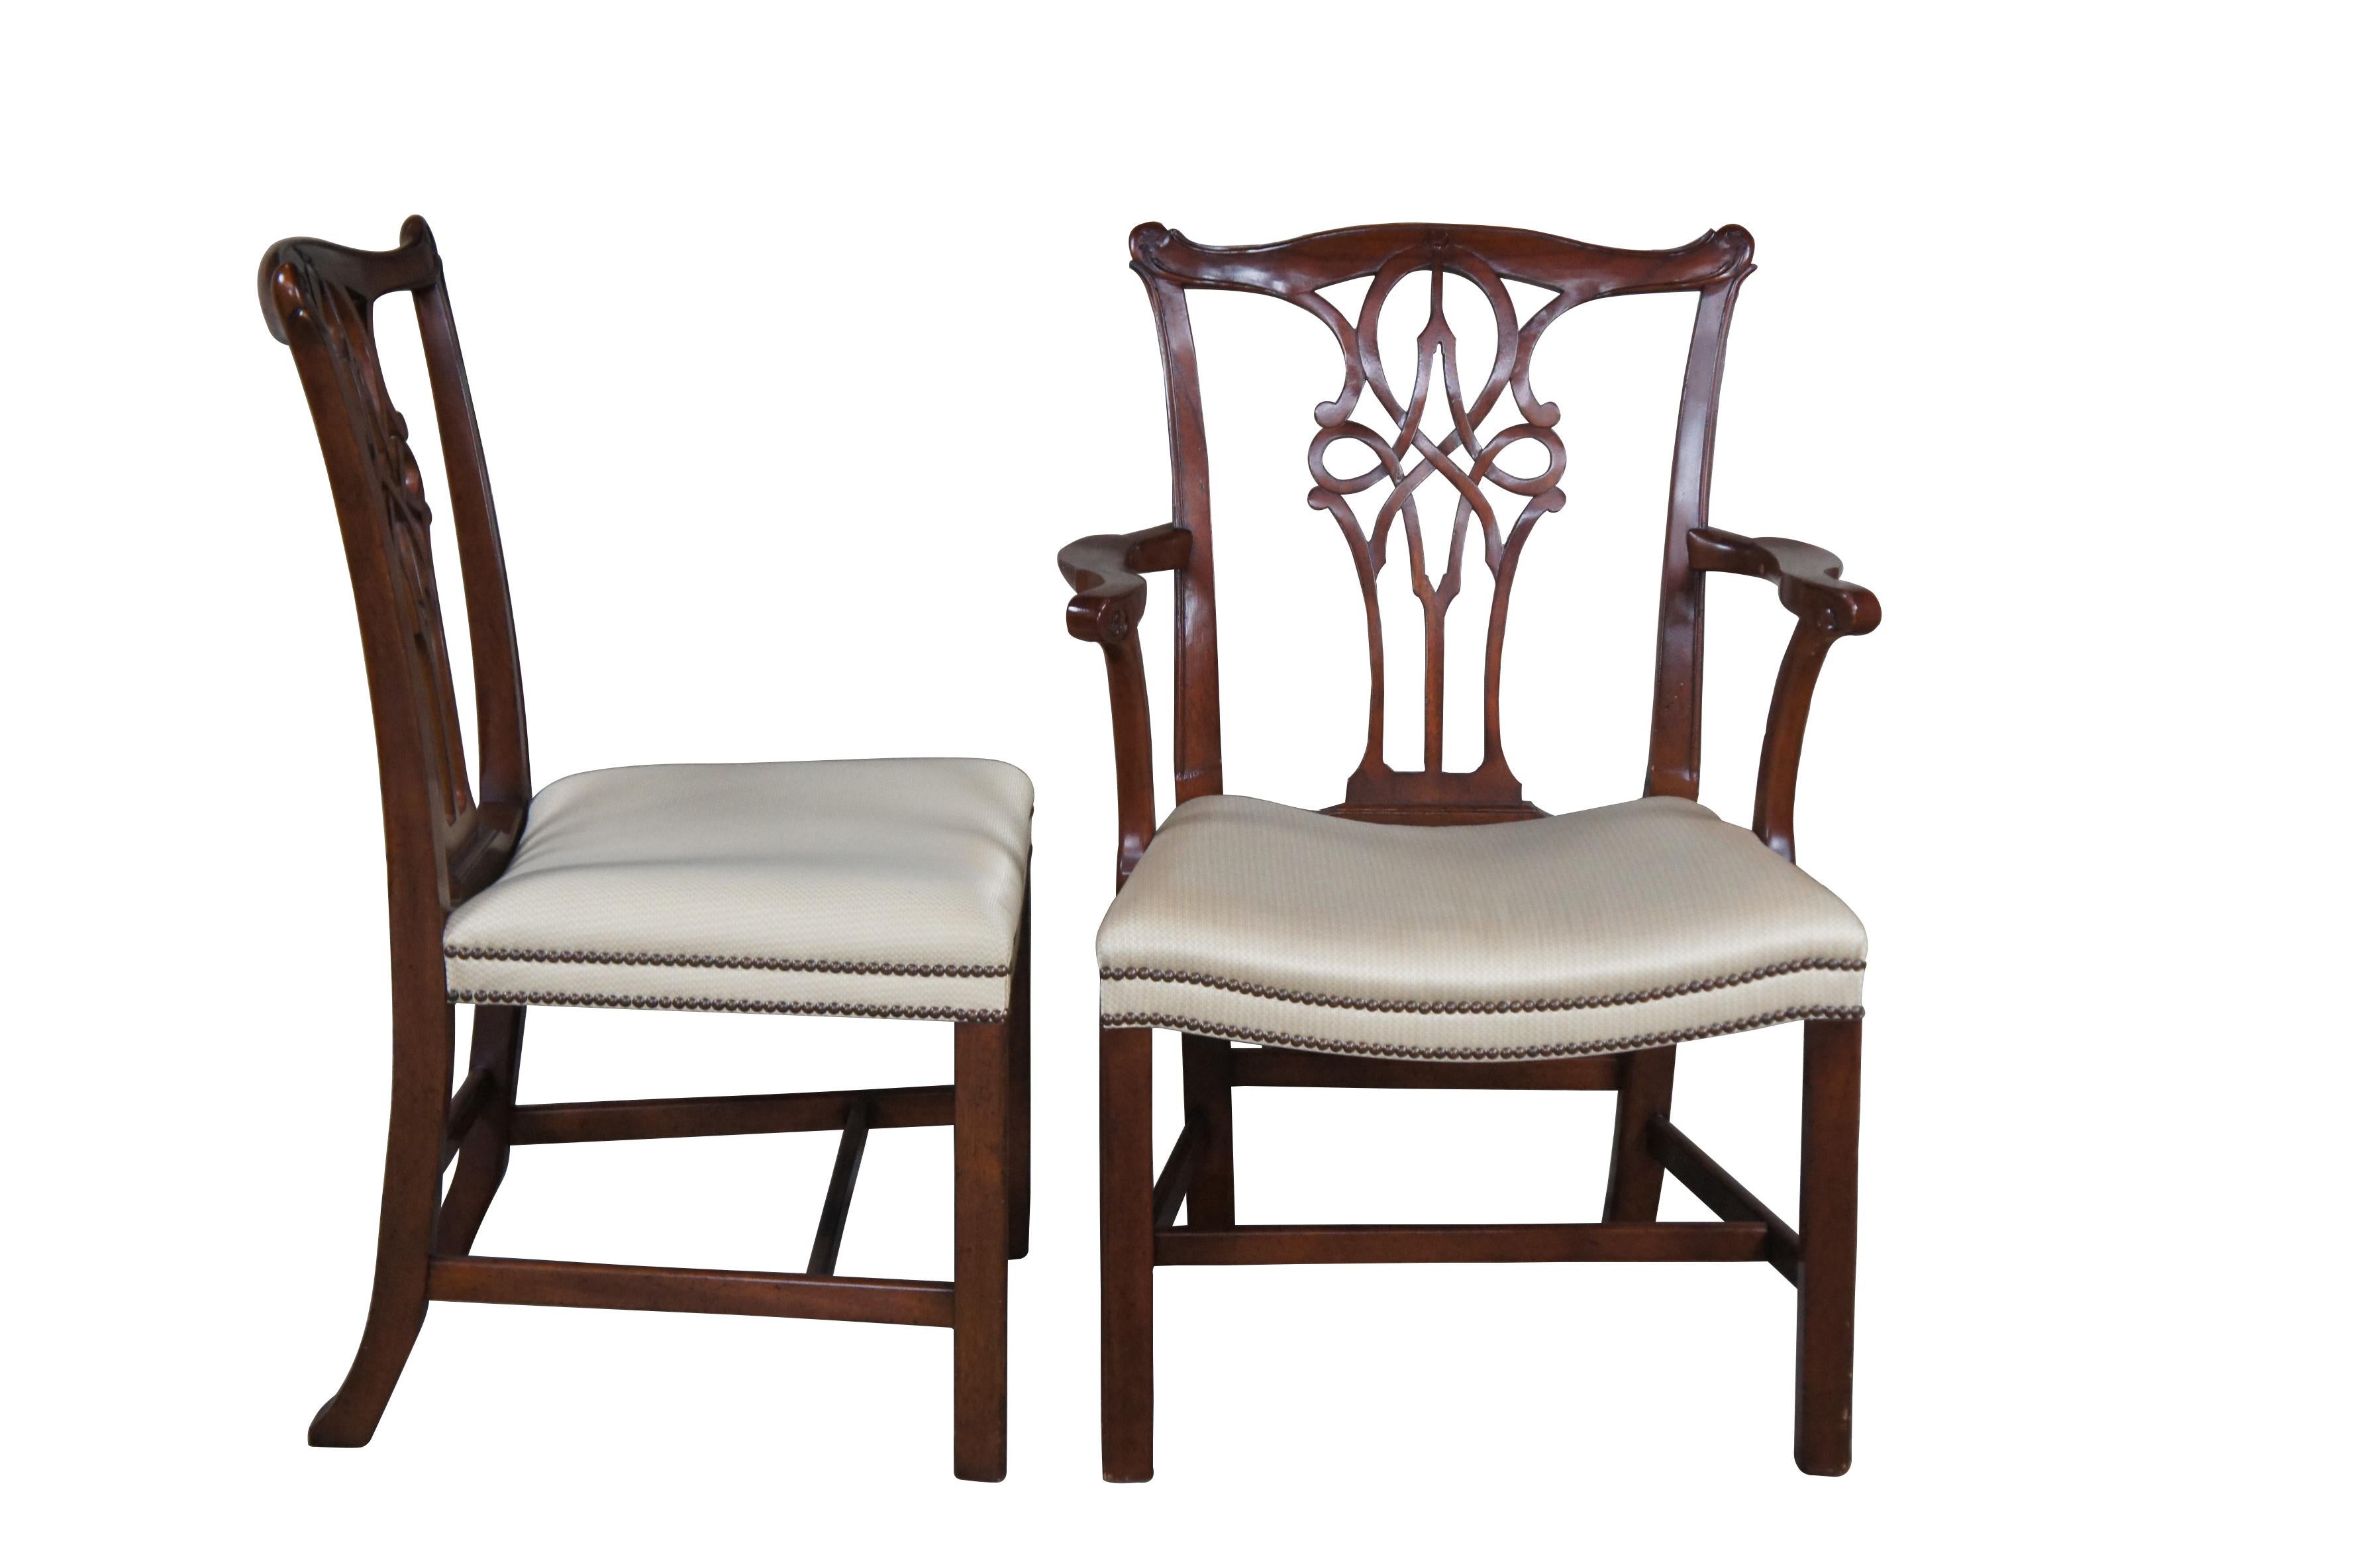 Rare et exceptionnel ensemble de huit chaises de salle à manger en acajou sculpté de style Chippendale, provenant de la collection exclusive Stately Homes de Baker Furniture.

L'ensemble comprend deux fauteuils ouverts et six chaises d'appoint. Les